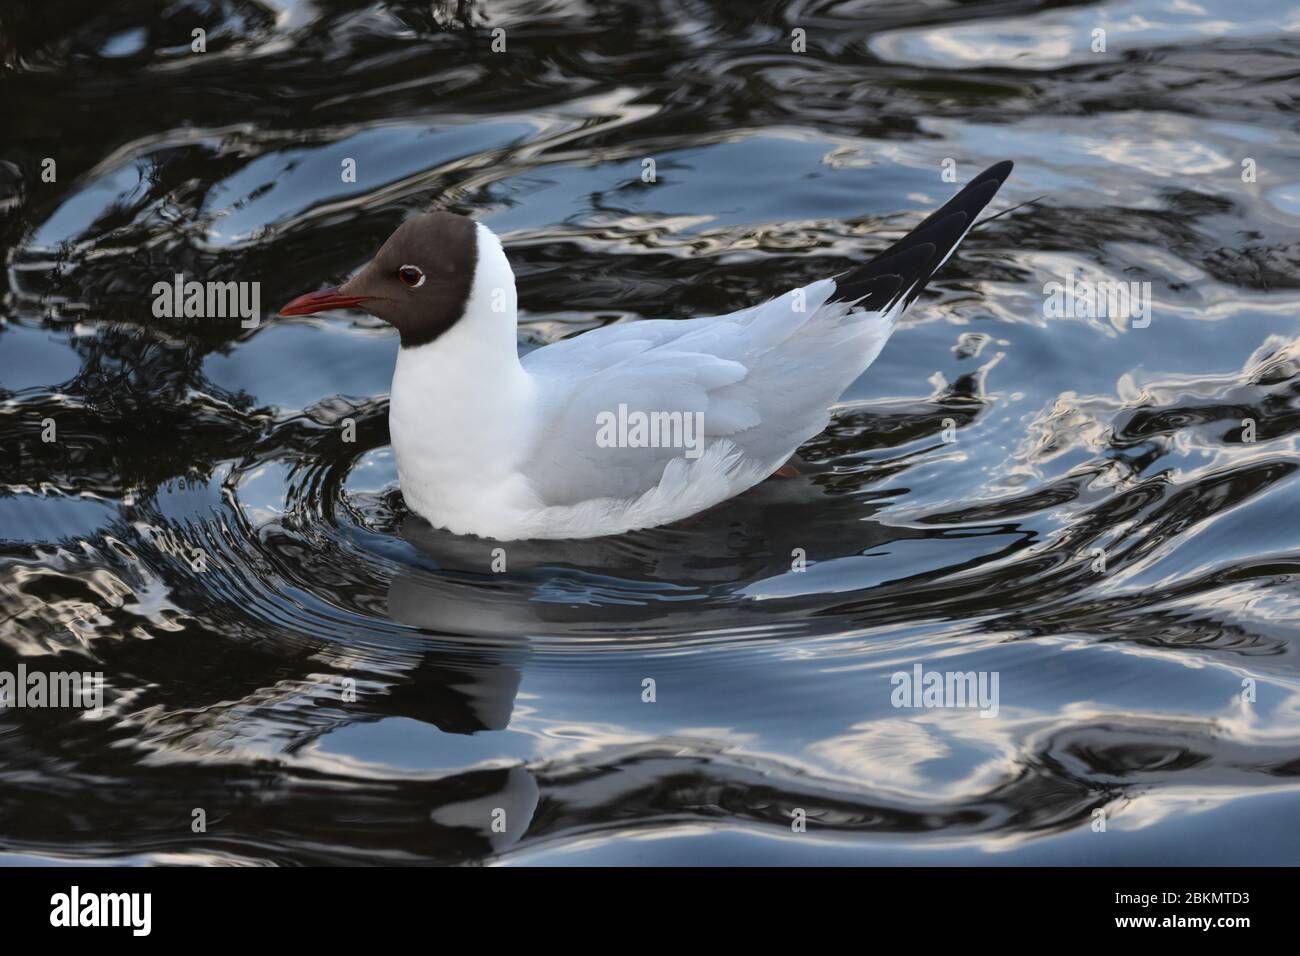 Ein Nahaufnahme Bild einer Ente im Wasser mit wunderschönen Wasserwellen Stockfoto